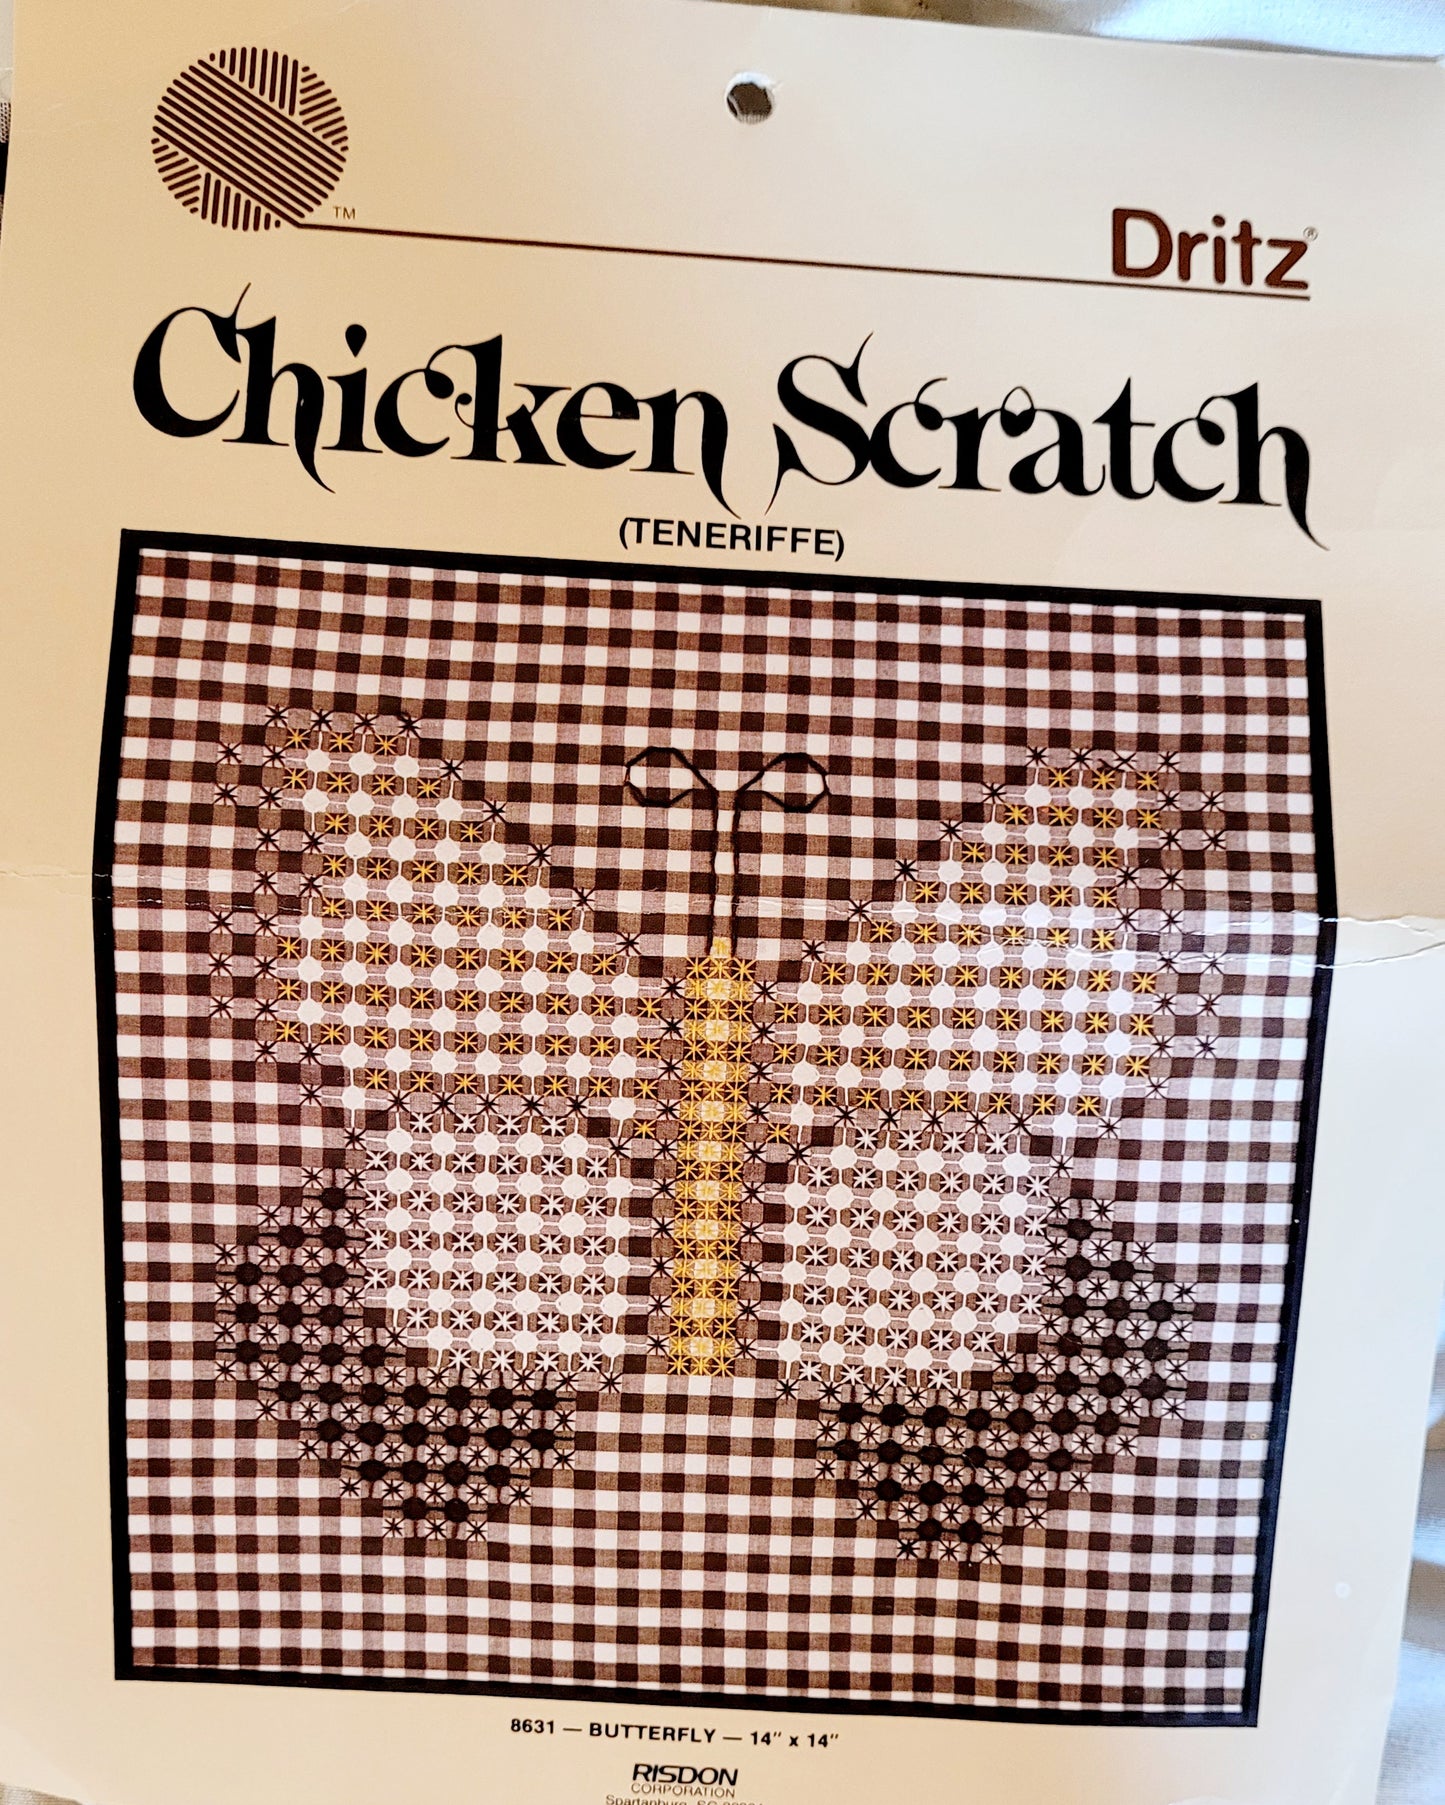 Chicken Scratch (Teneriffe) *Butterfly 14"x14" Pillow Quilt Pattern